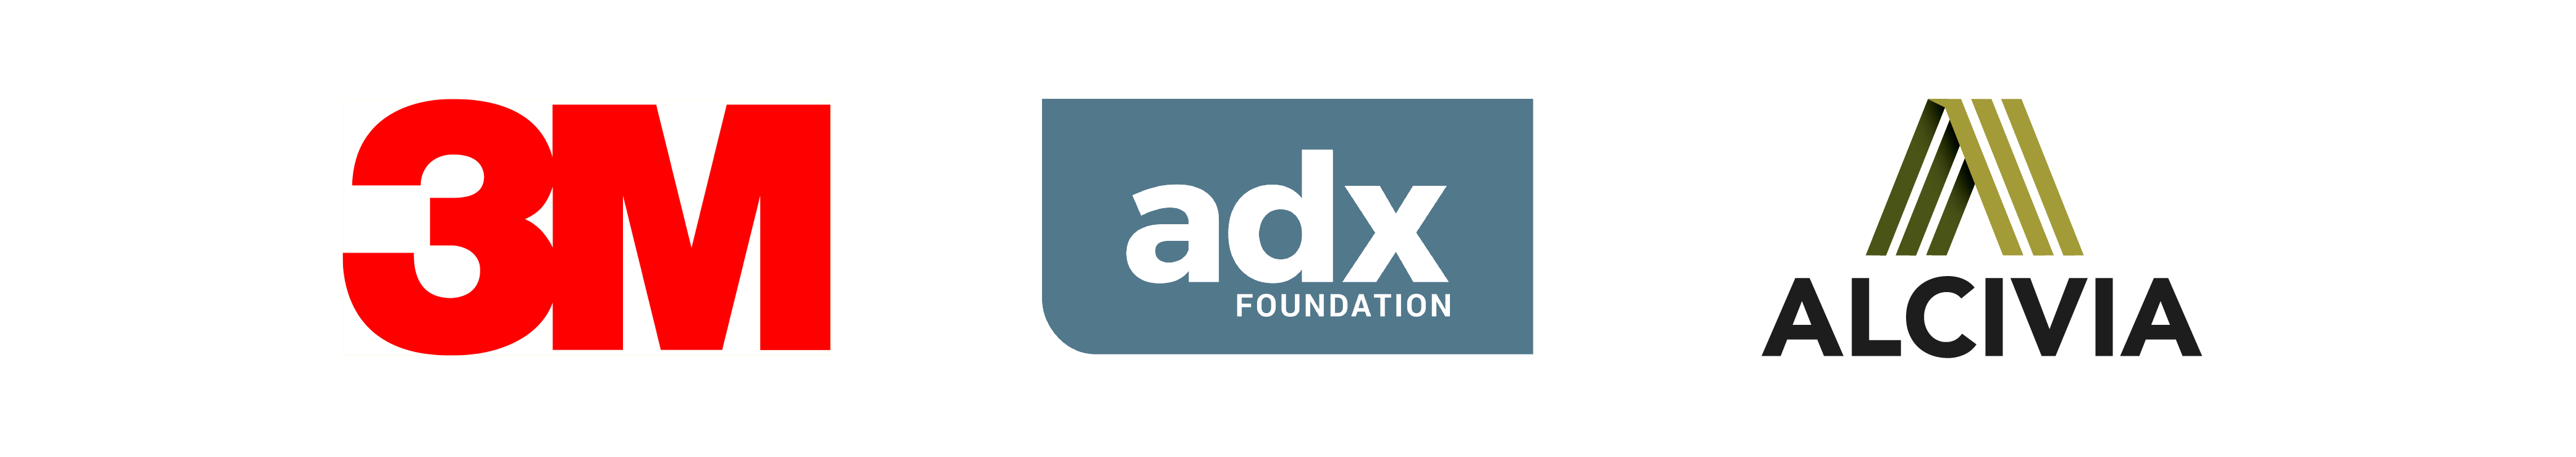 logos for adx Foundation, 3M, Alcivia